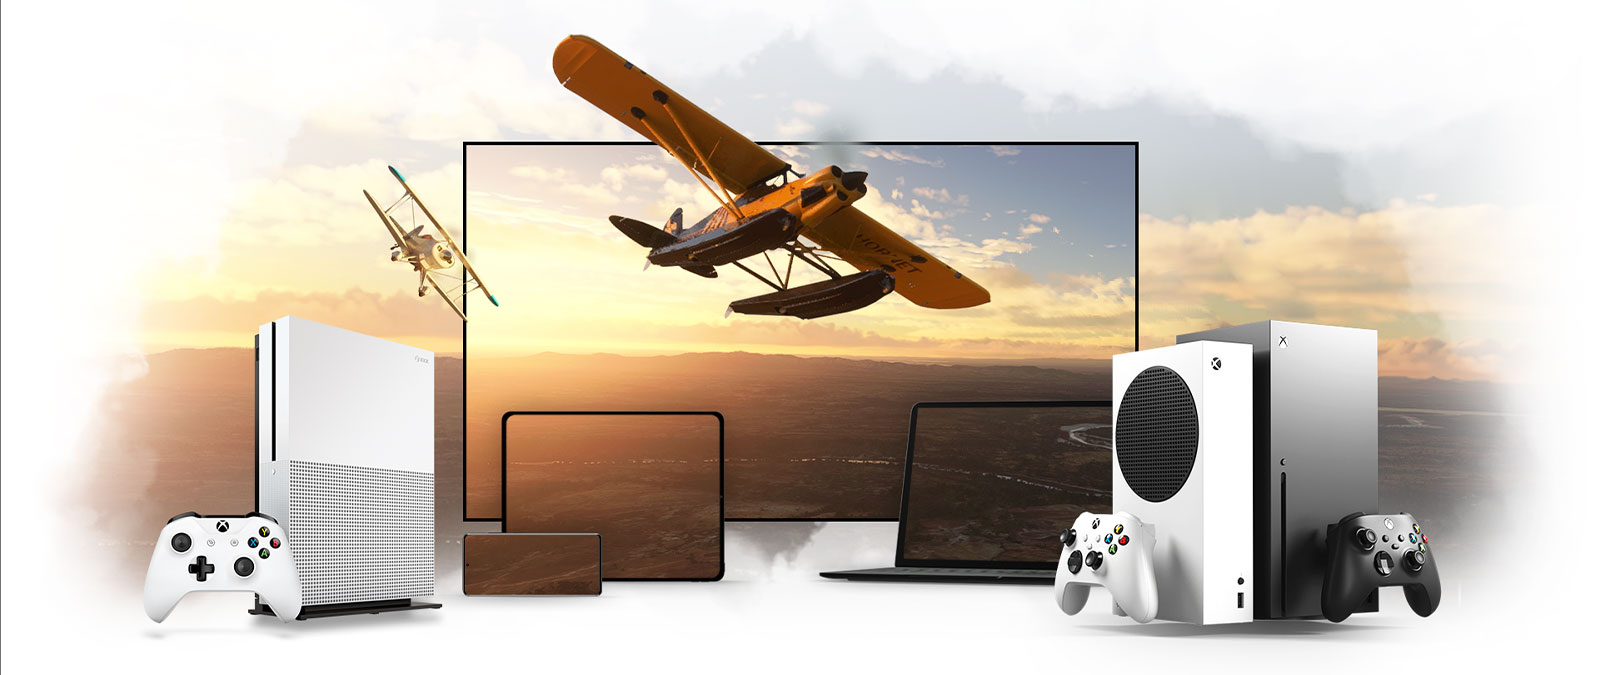 En række enheder, inkl. et tv, en Xbox One og en Xbox Series X, Et propelfly flyver væk fra en solbeskinnet horisont.